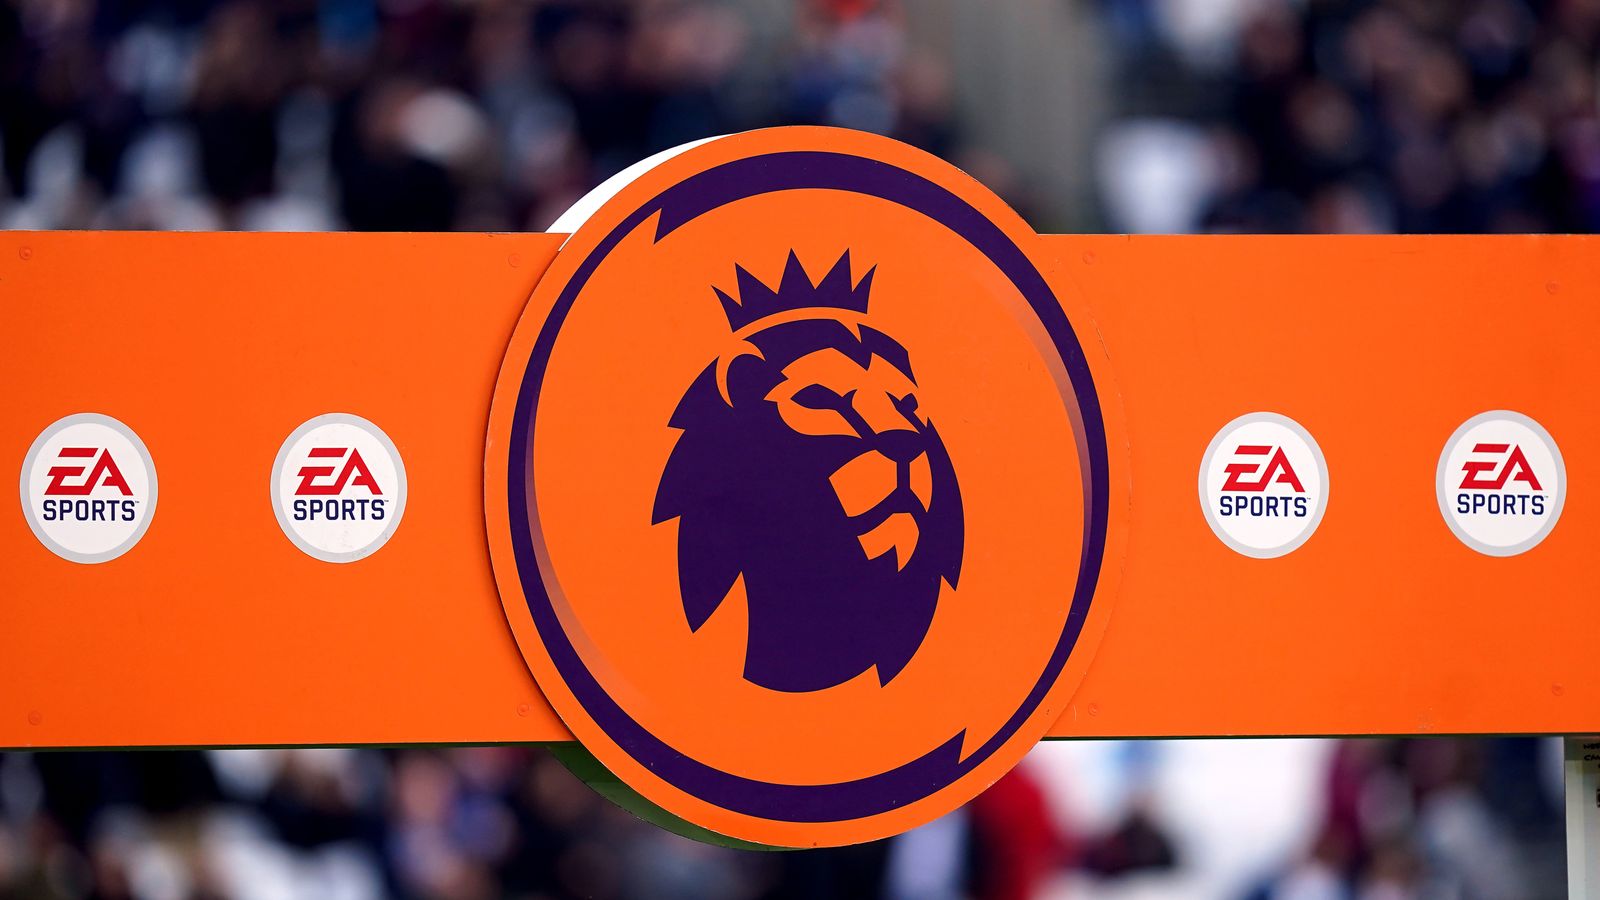 La Premier League conclut un accord de près de 500 millions de livres sterling avec le fabricant de jeux EA |  Actualité économique